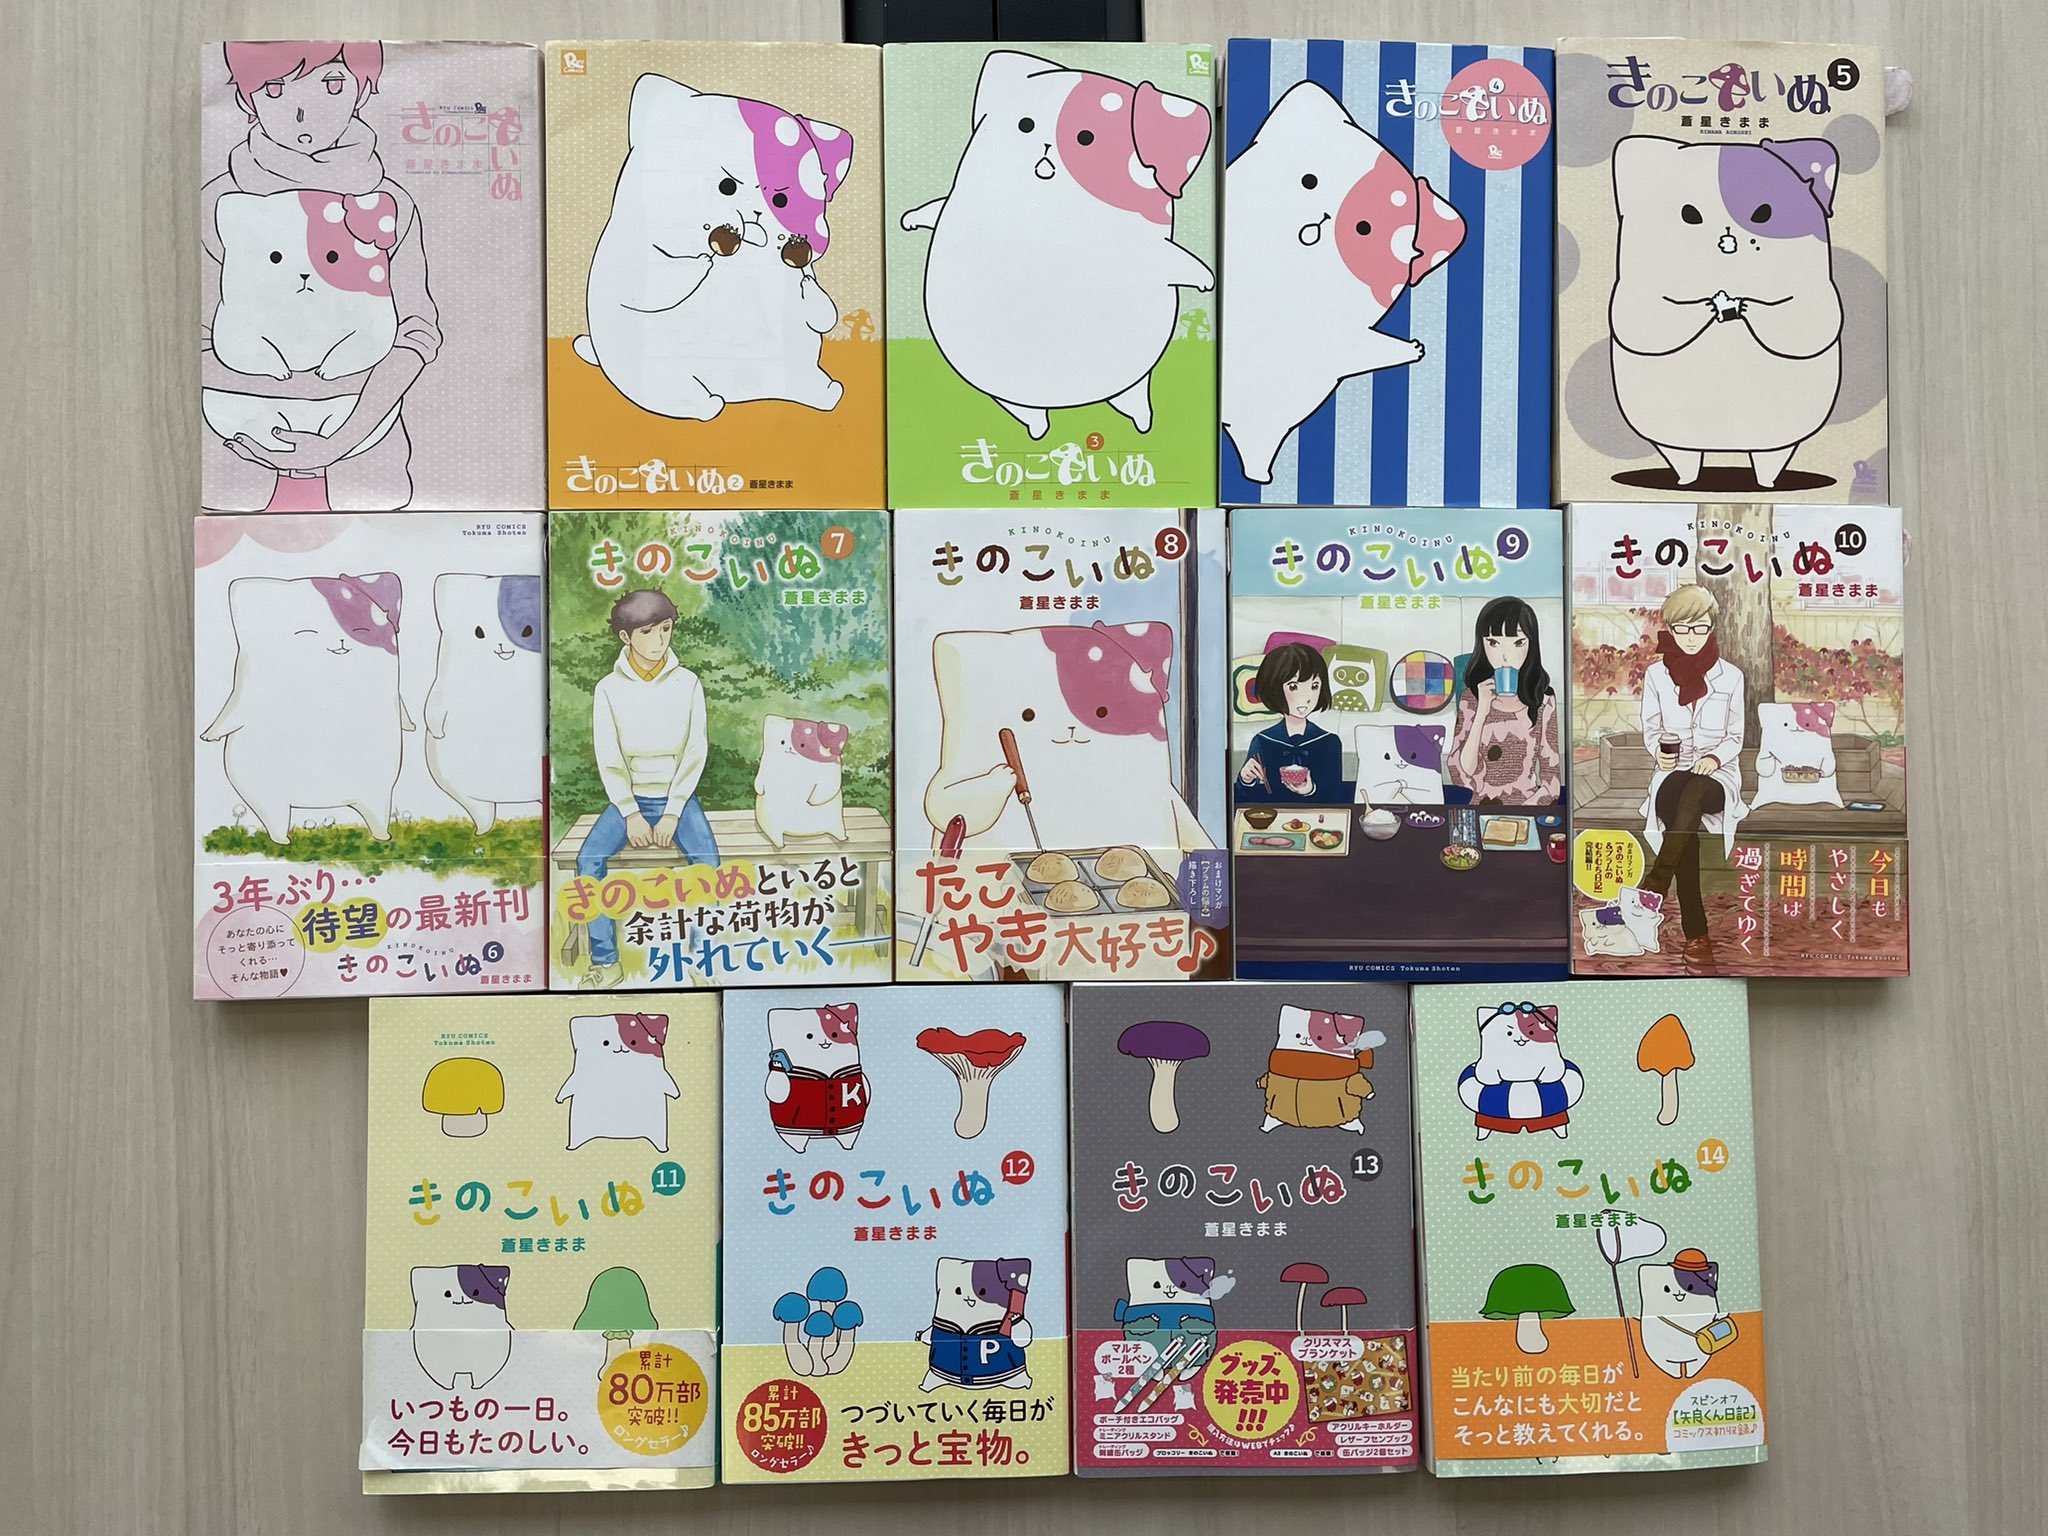 きのこいぬ公式 コミックス15巻5月13日 金 発売予定 Kinoko Official Twitter